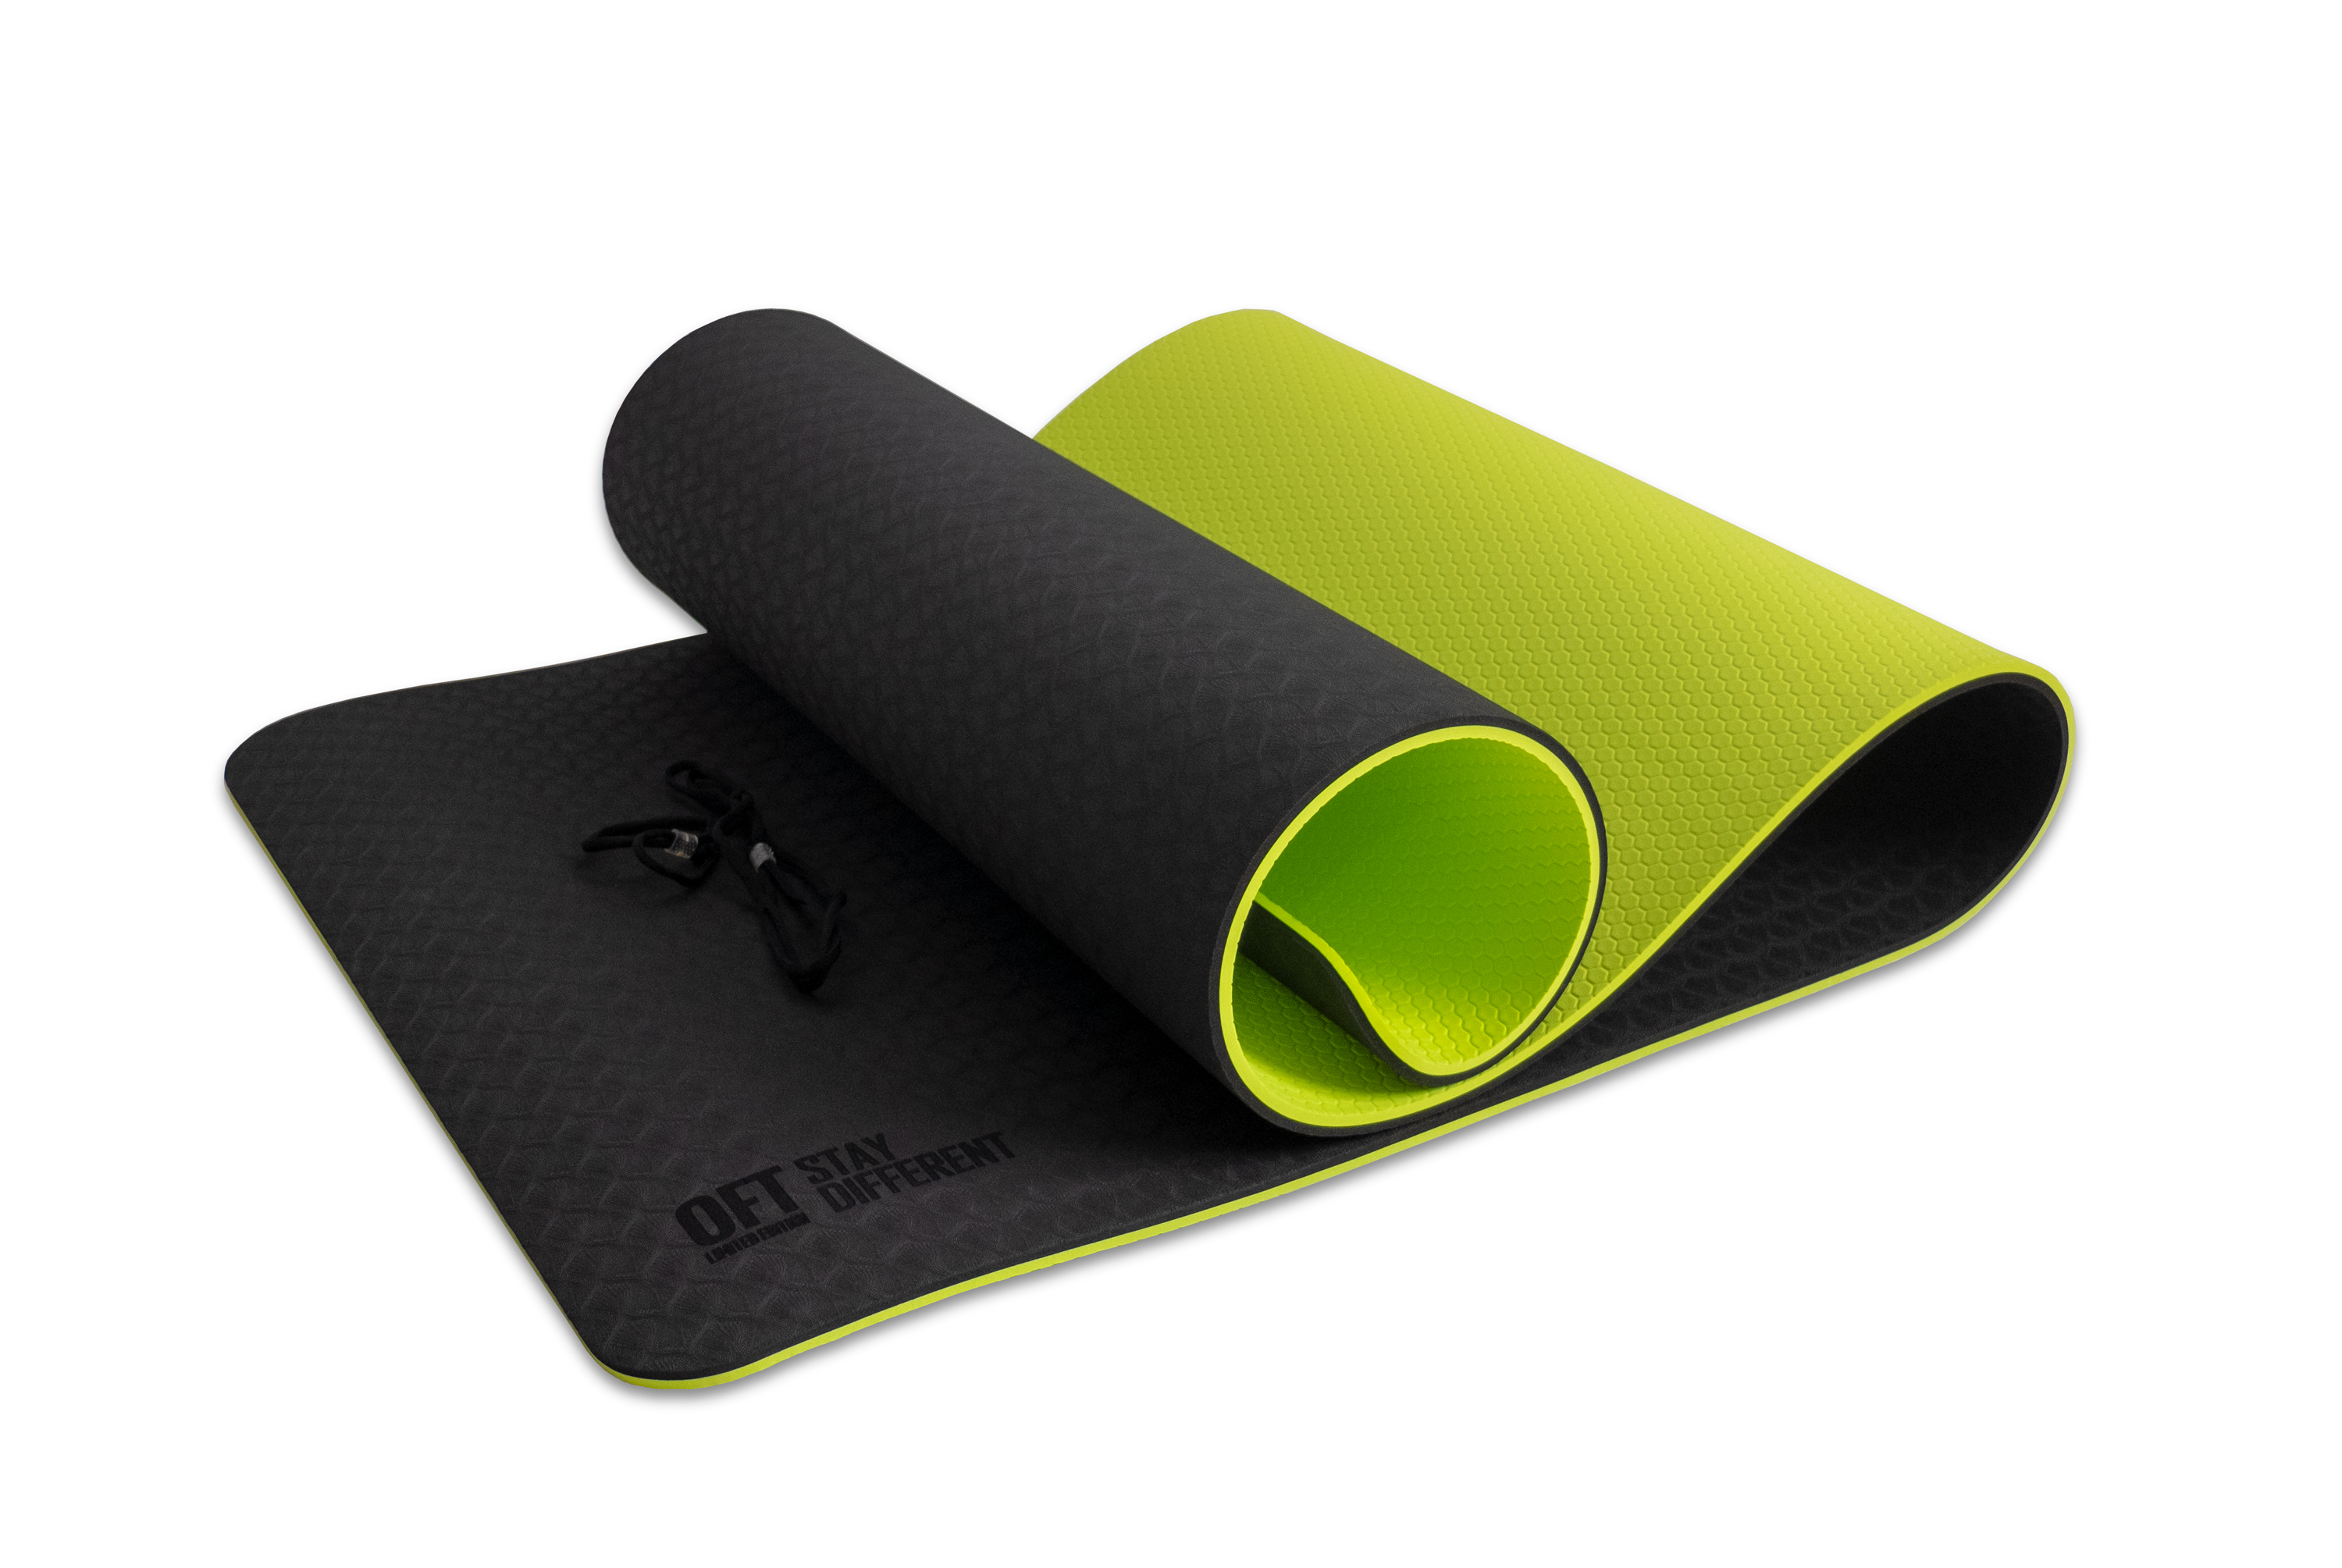 фото Fitness tools коврик для йоги 10 мм двухслойный tpe черно-зеленый oft ft-ygm10-tpe-bg original fit.tools